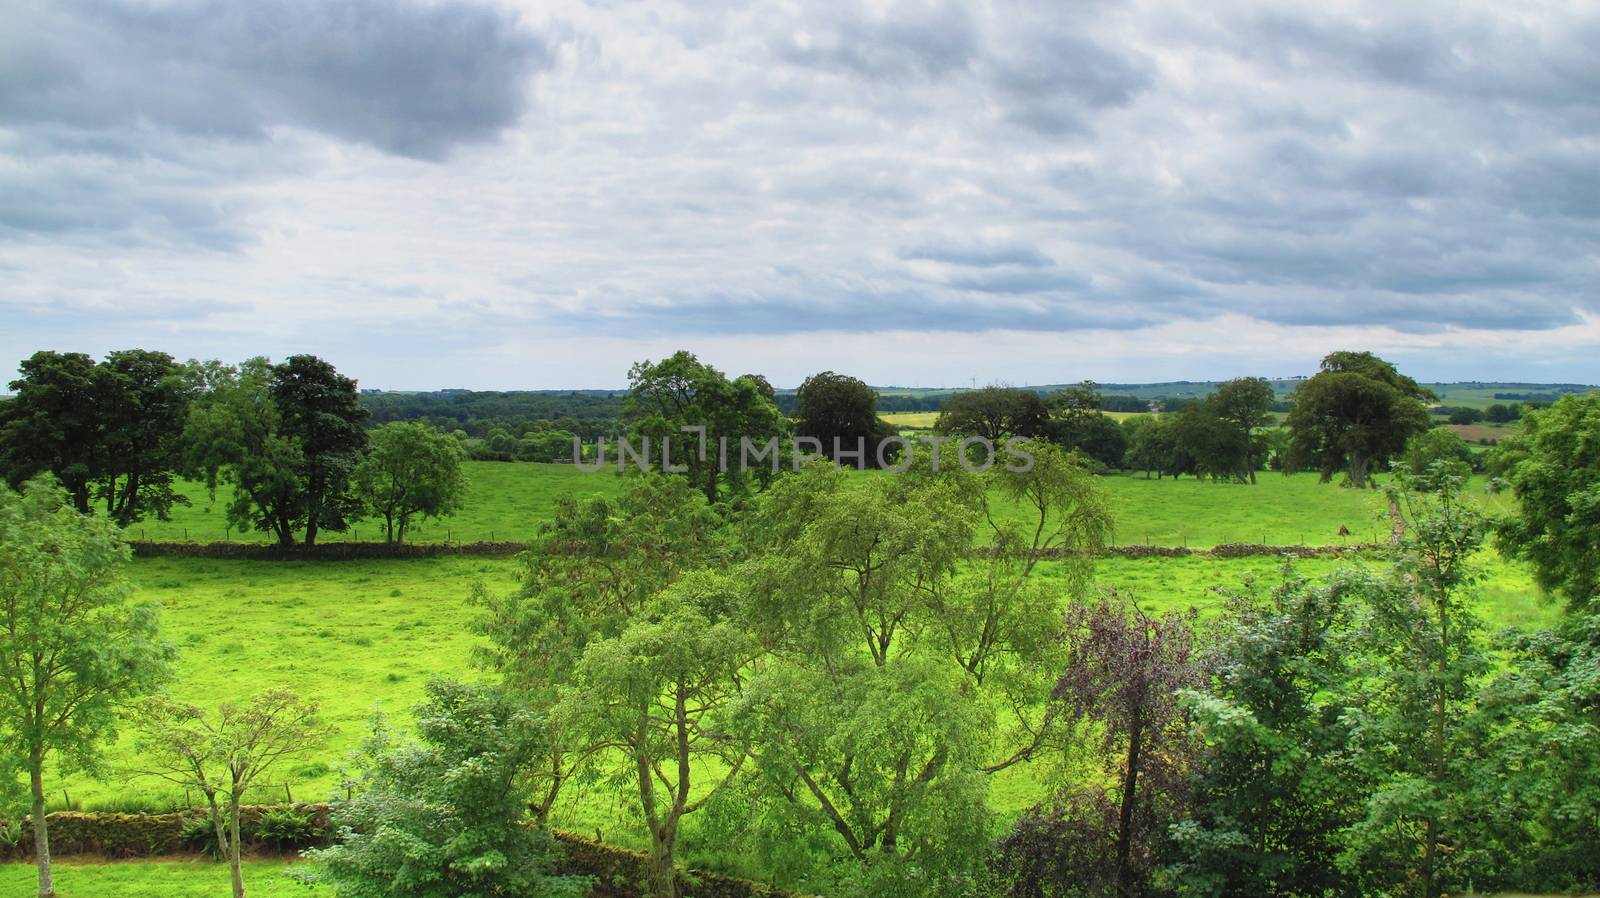 Scottish landscape in Aberdeenshire by mitzy